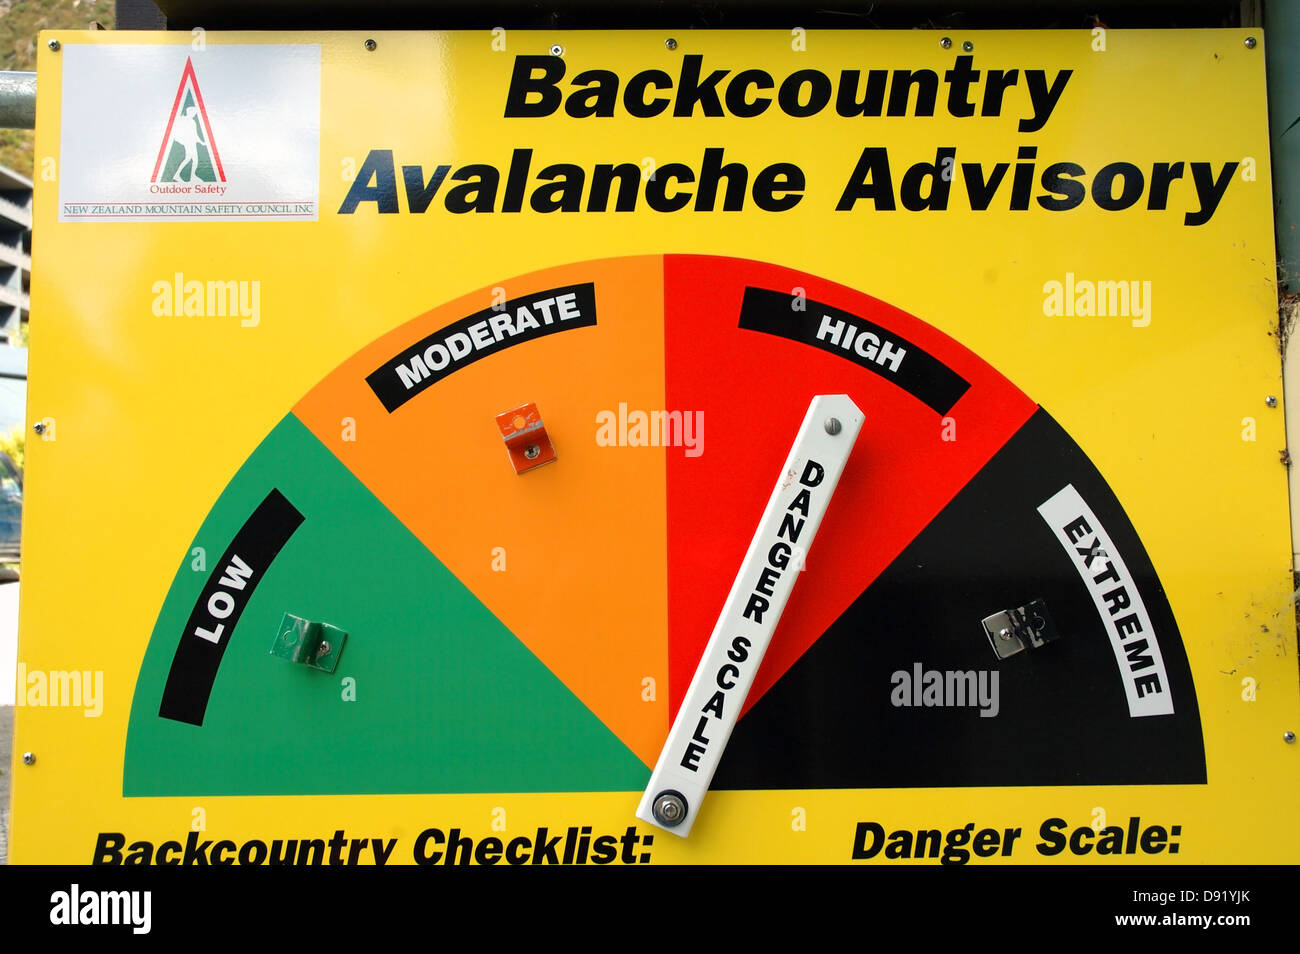 Backcountry avalanche segno consultivo ad alto rischio, montagna della Nuova Zelanda Consiglio di sicurezza, Aoraki Mt Cook National Park, Nuova Zelanda Foto Stock